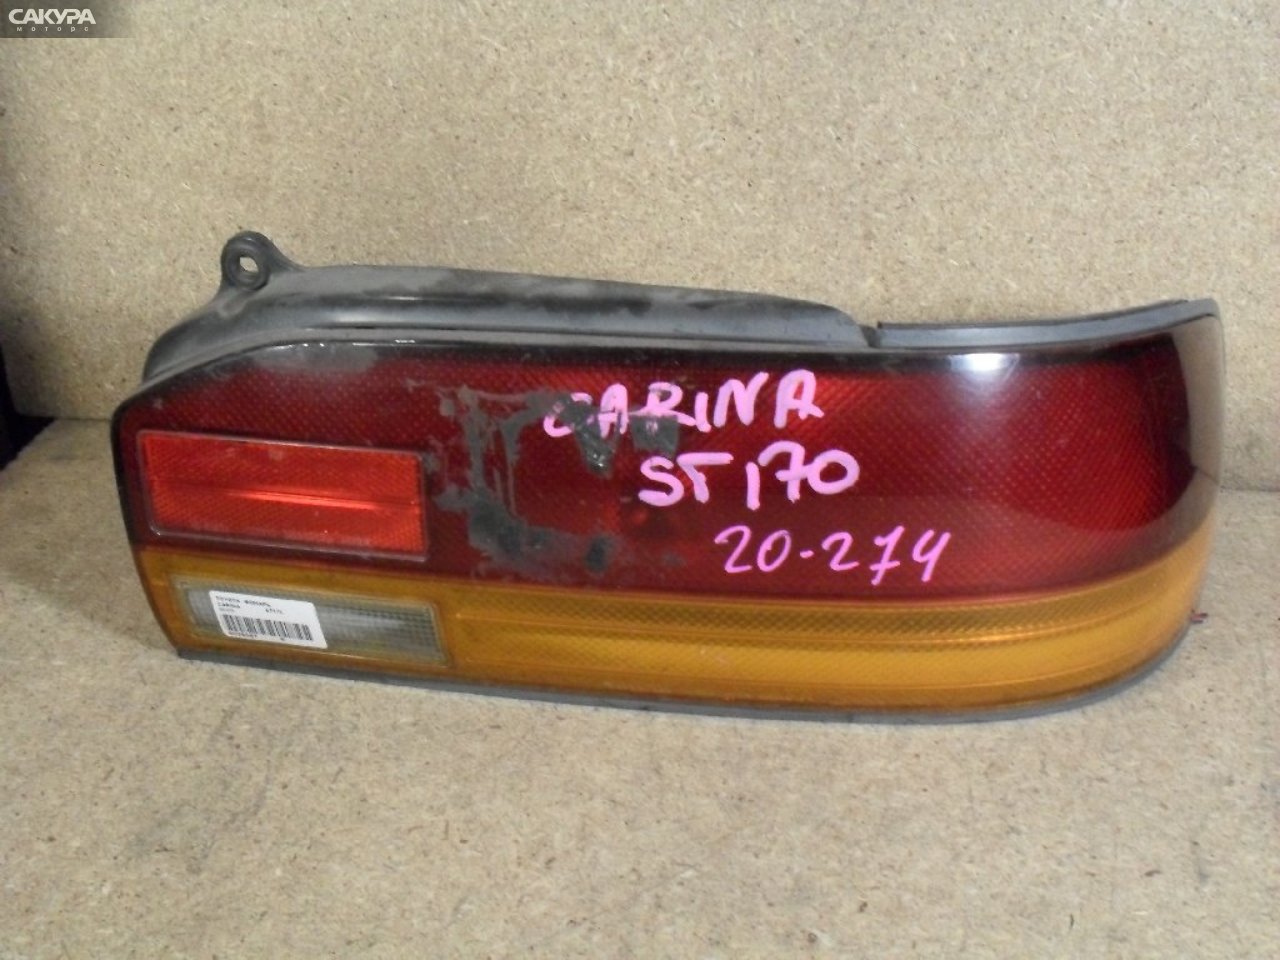 Фонарь стоп-сигнала правый Toyota Carina AT170 20-274: купить в Сакура Абакан.